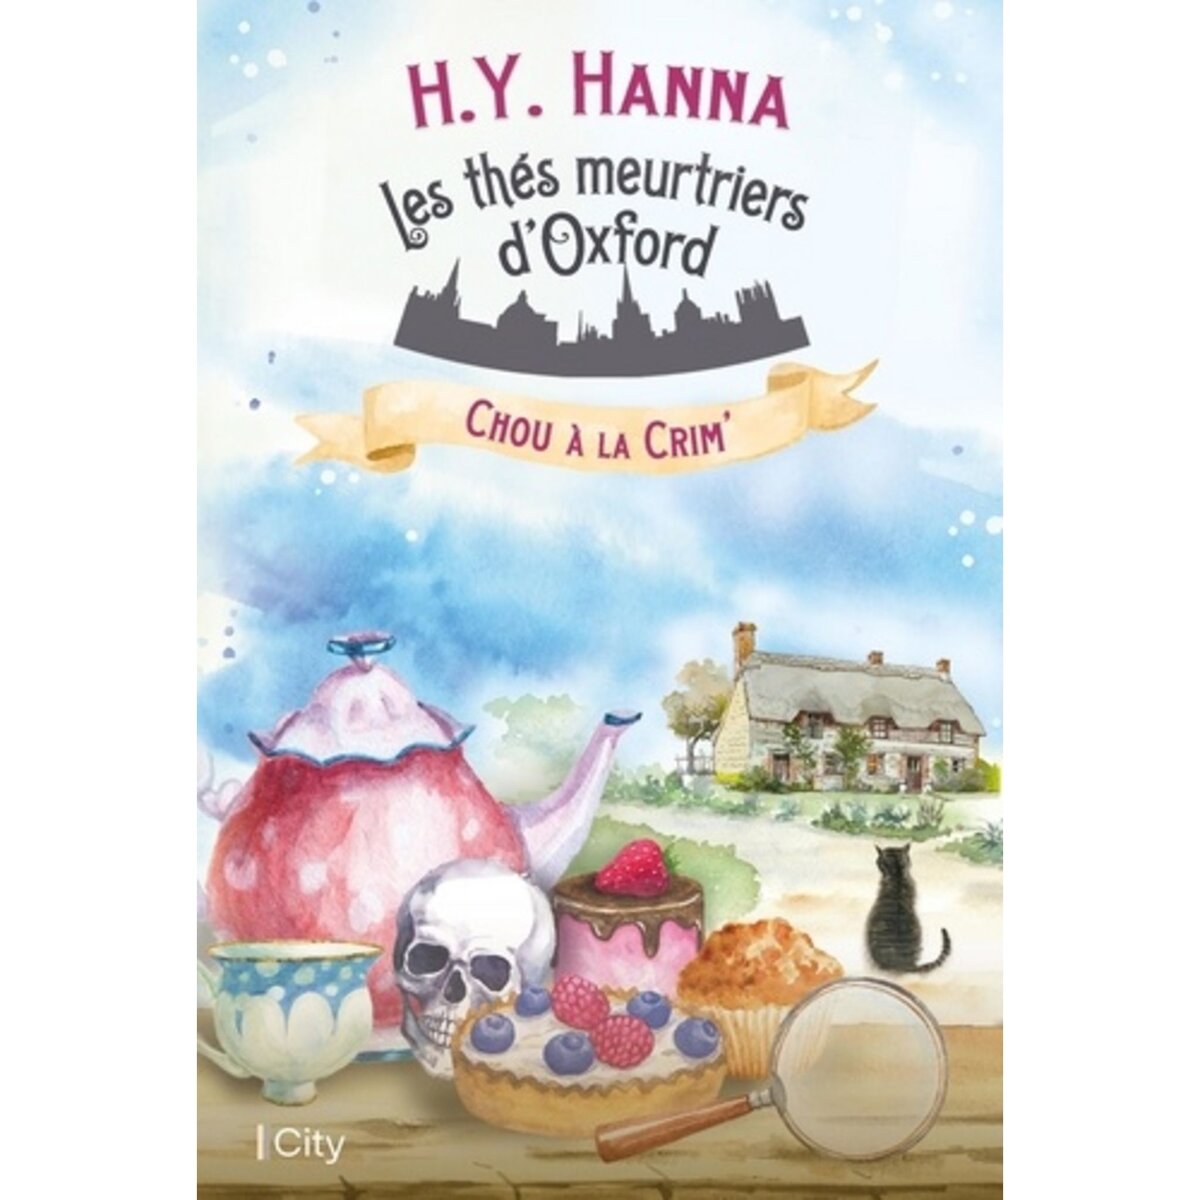  LES THES MEURTRIERS D'OXFORD TOME 1 : CHOU A LA CRIM', Hanna H.Y.